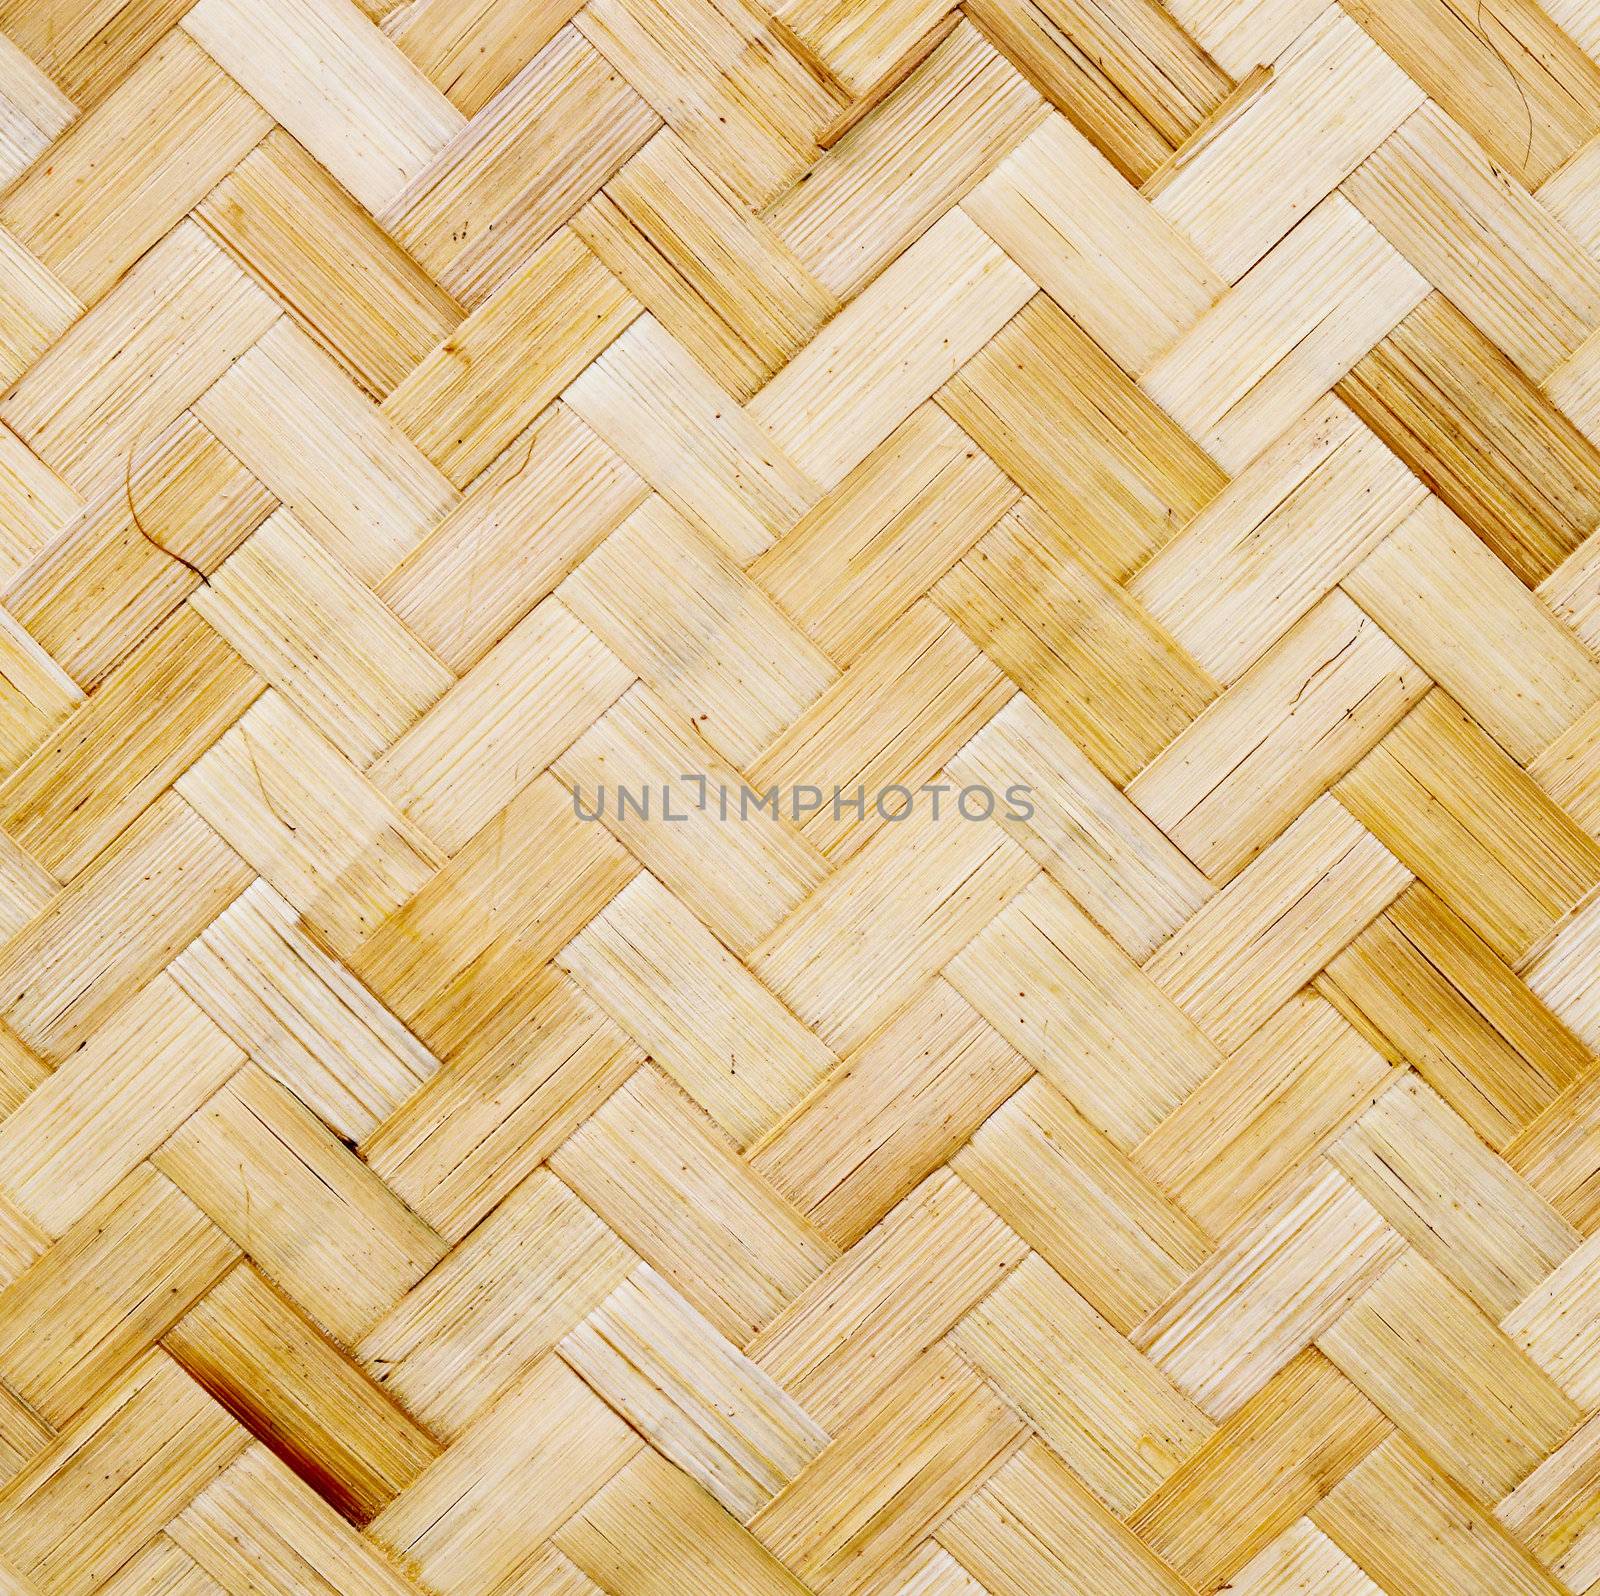 Bamboo wood texture ,Thai handwork by geargodz